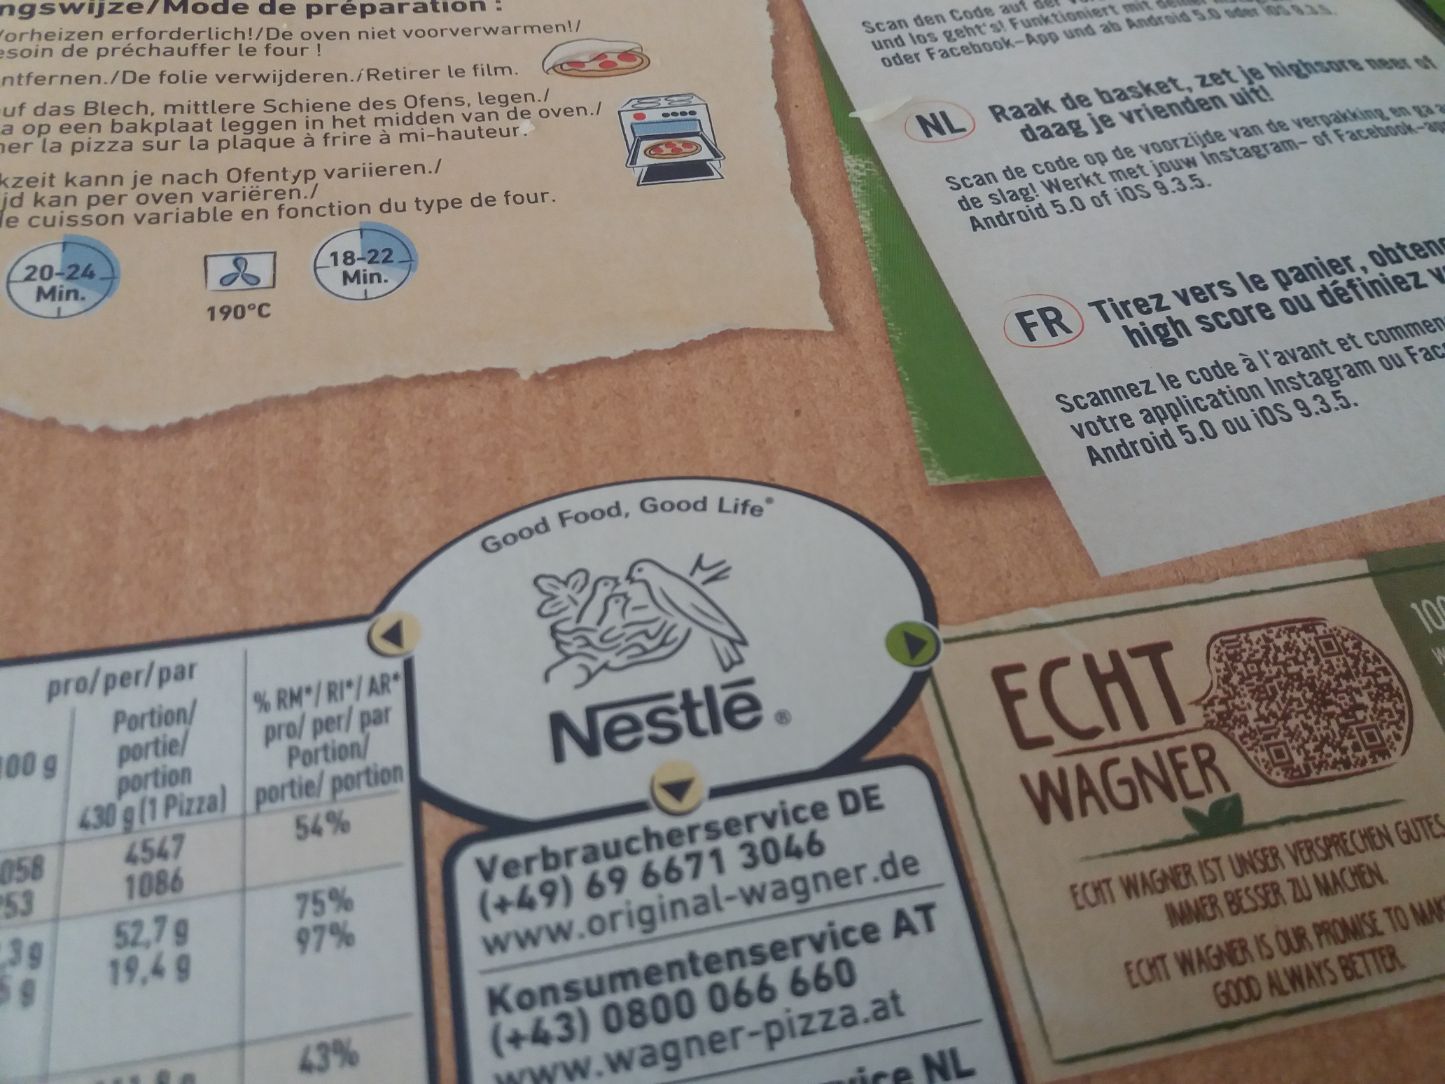 Nestle-Wagner pizzadoos